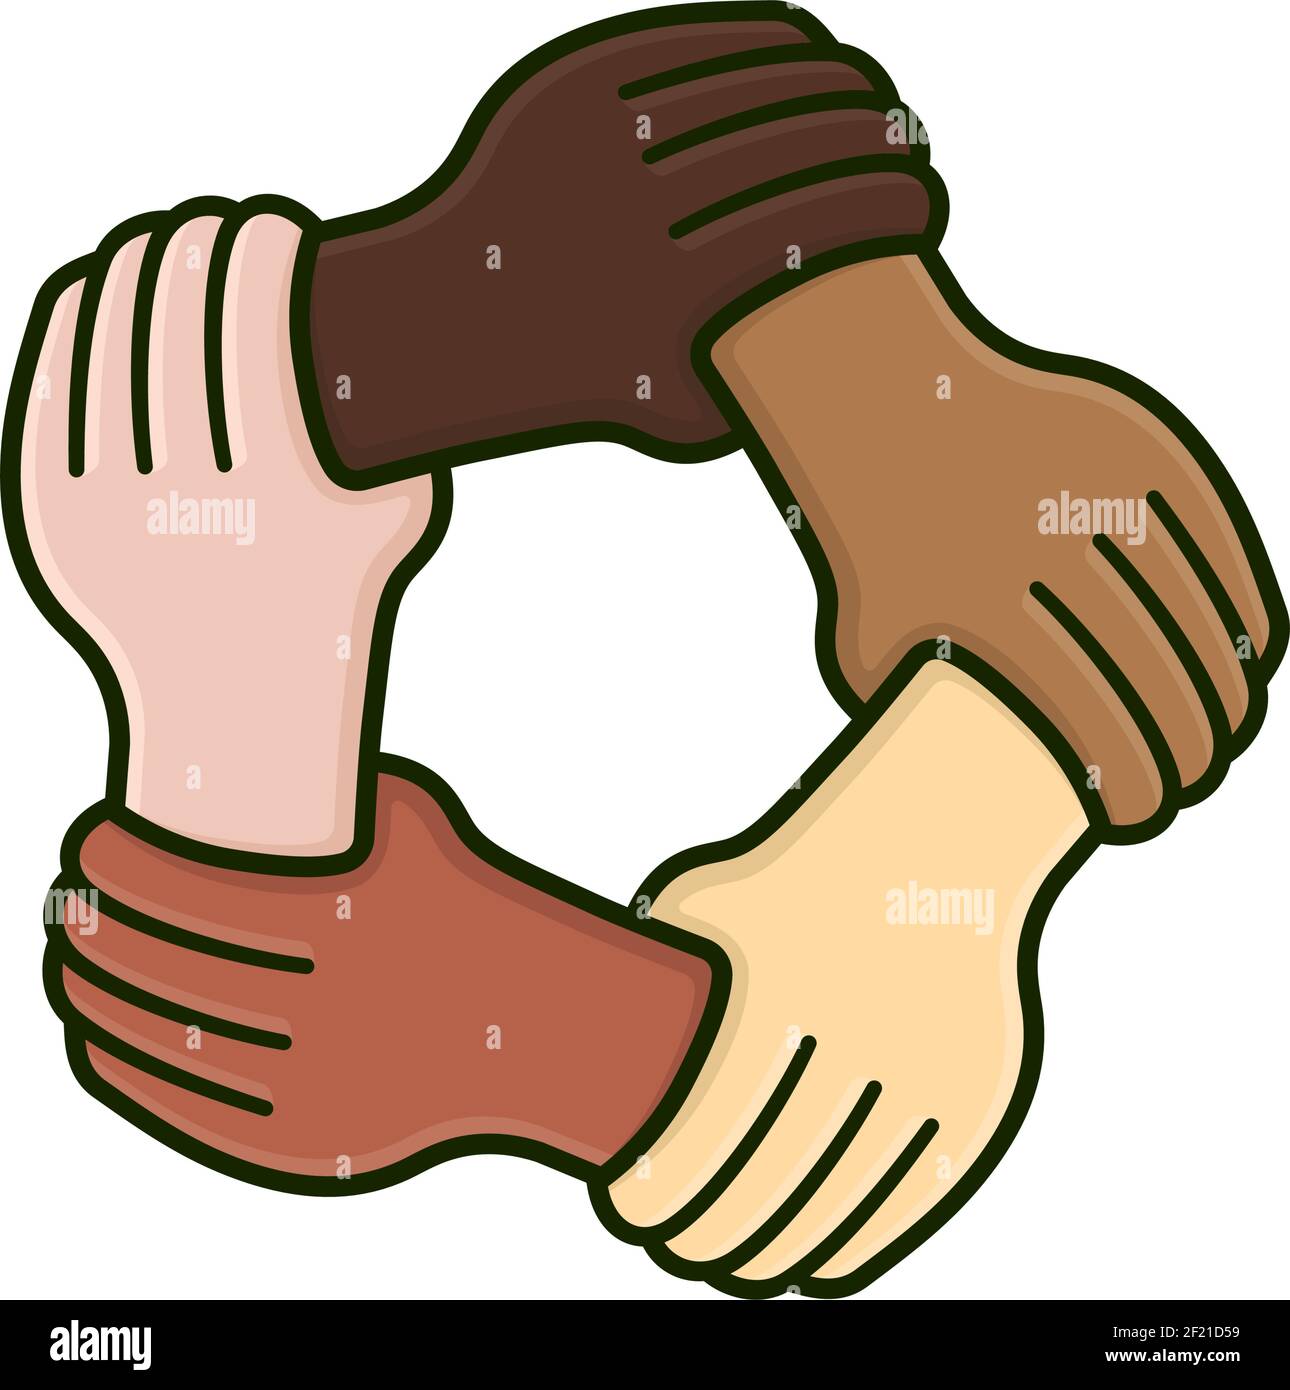 Cinq mains de différentes couleurs de peau tenant chacun le poignet Illustration vectorielle isolée pour la Journée de la diversité multiculturelle, le 18 octobre Illustration de Vecteur